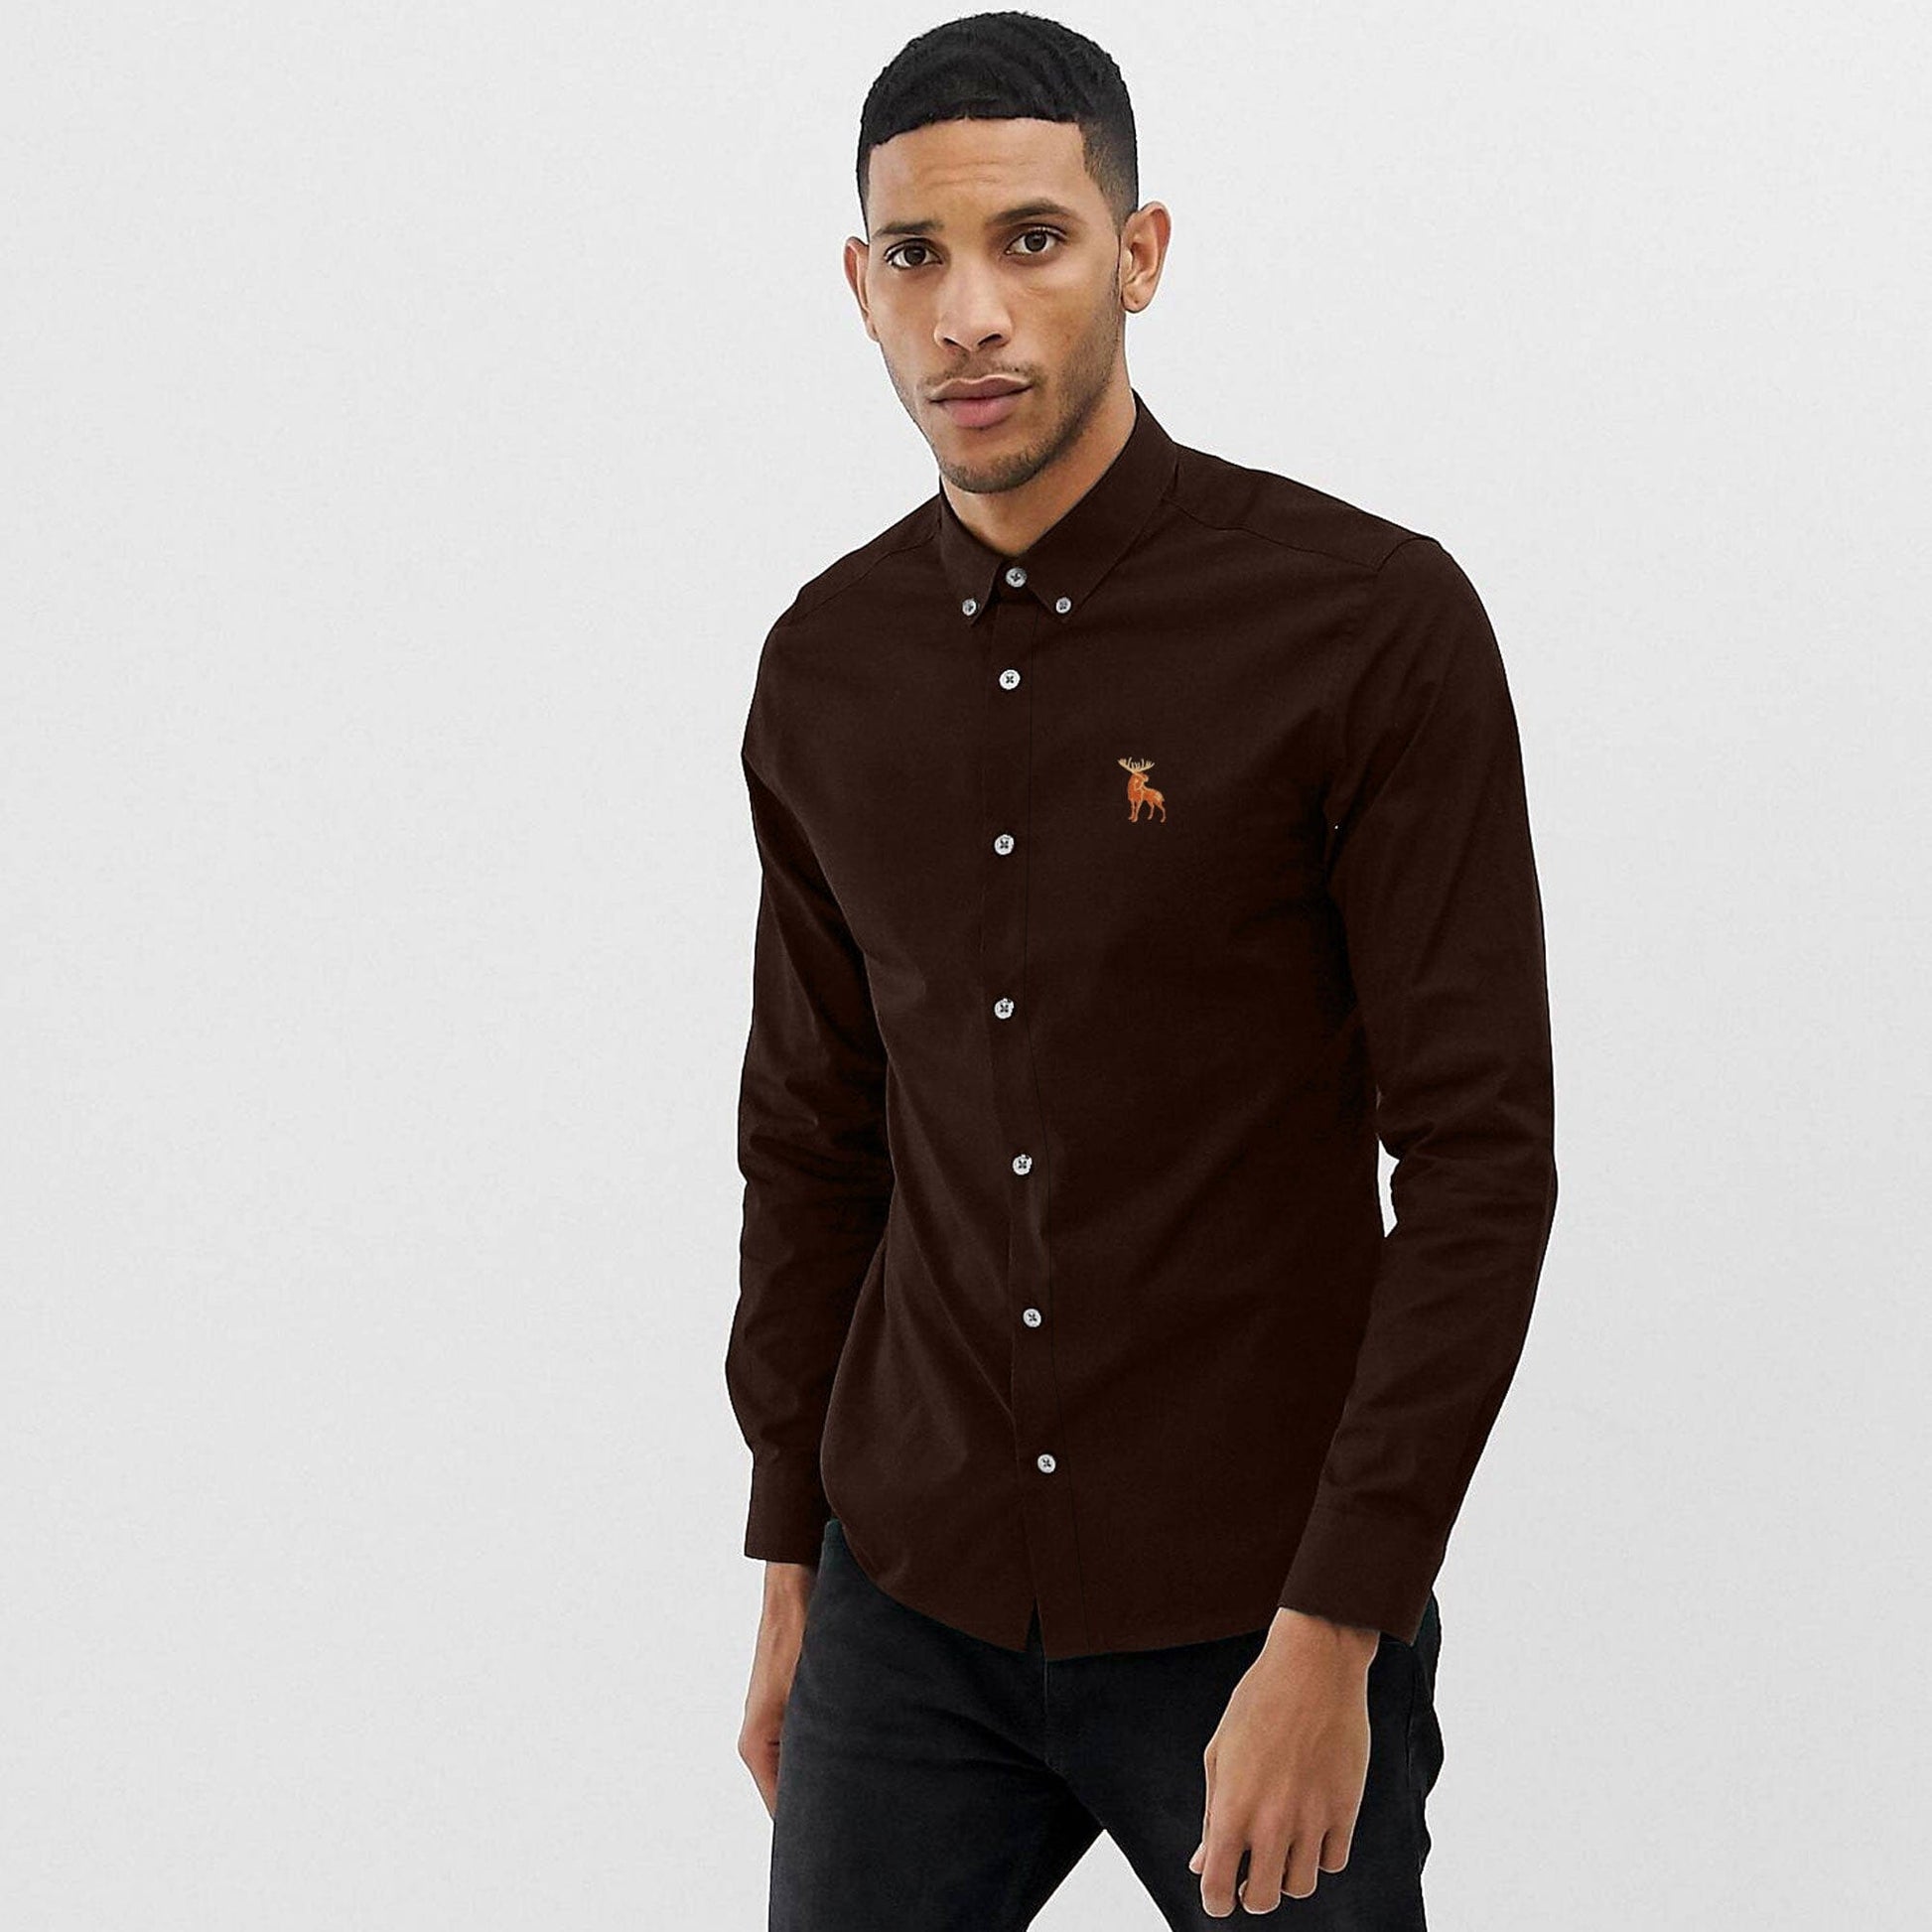 Polo Republica Men's Moose Embroidered Premium Casual Shirt Men's Casual Shirt Polo Republica Chocolate S 